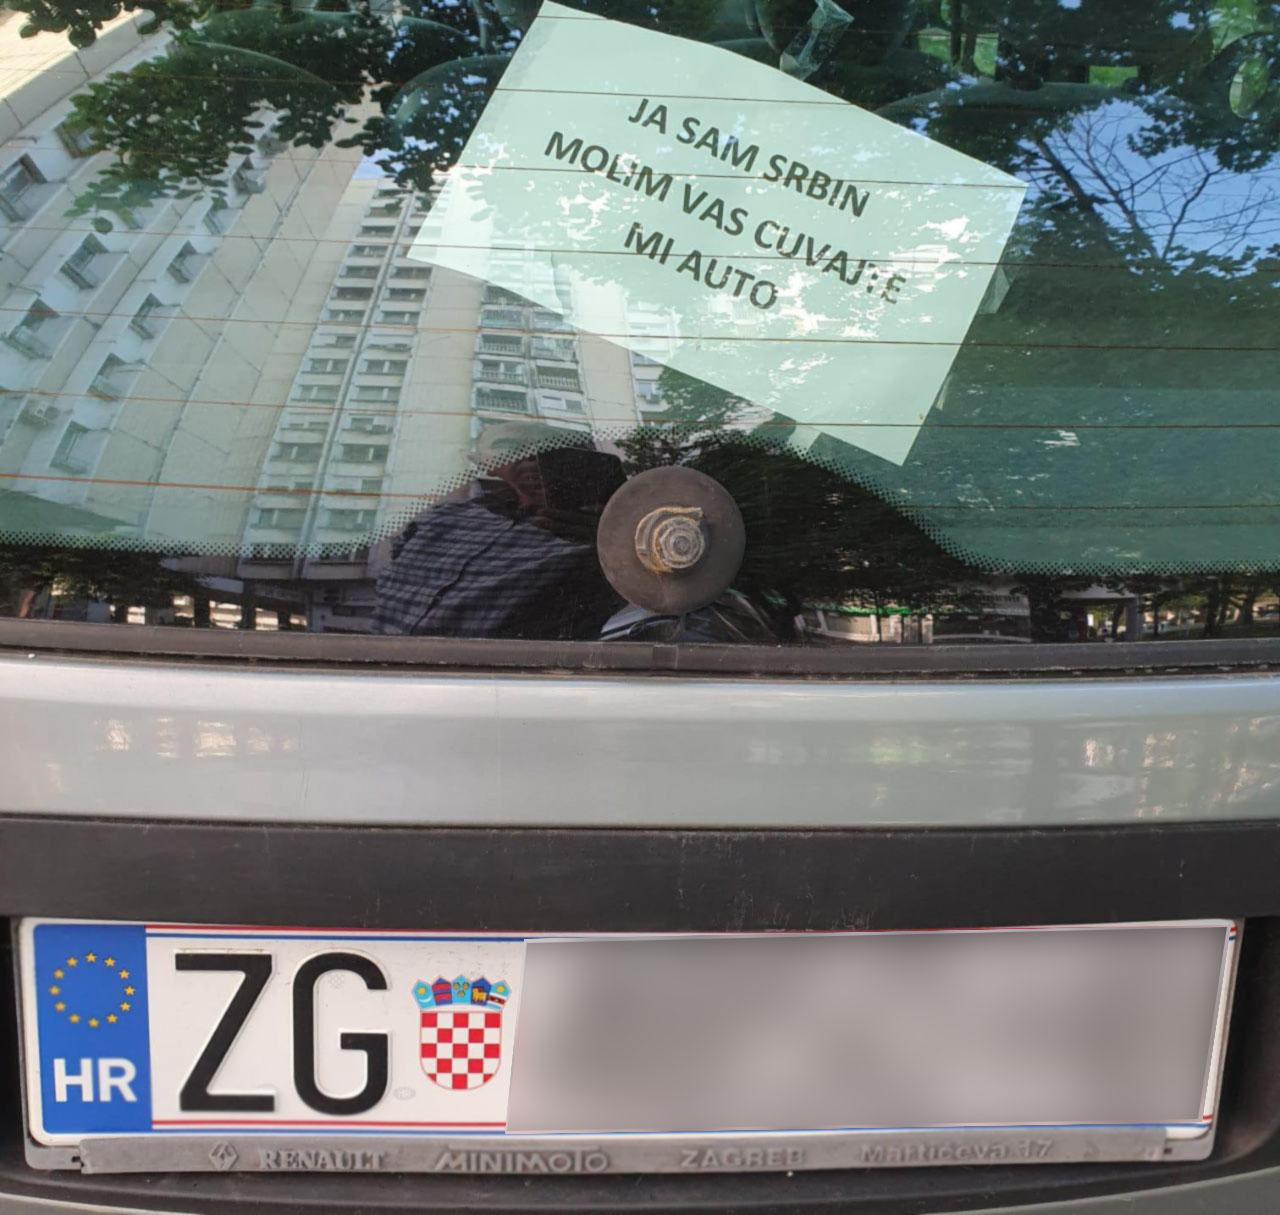 Čitaoci šalju: Poruka na automobilu - Ja sam Srbin, čuvajte mi auto...